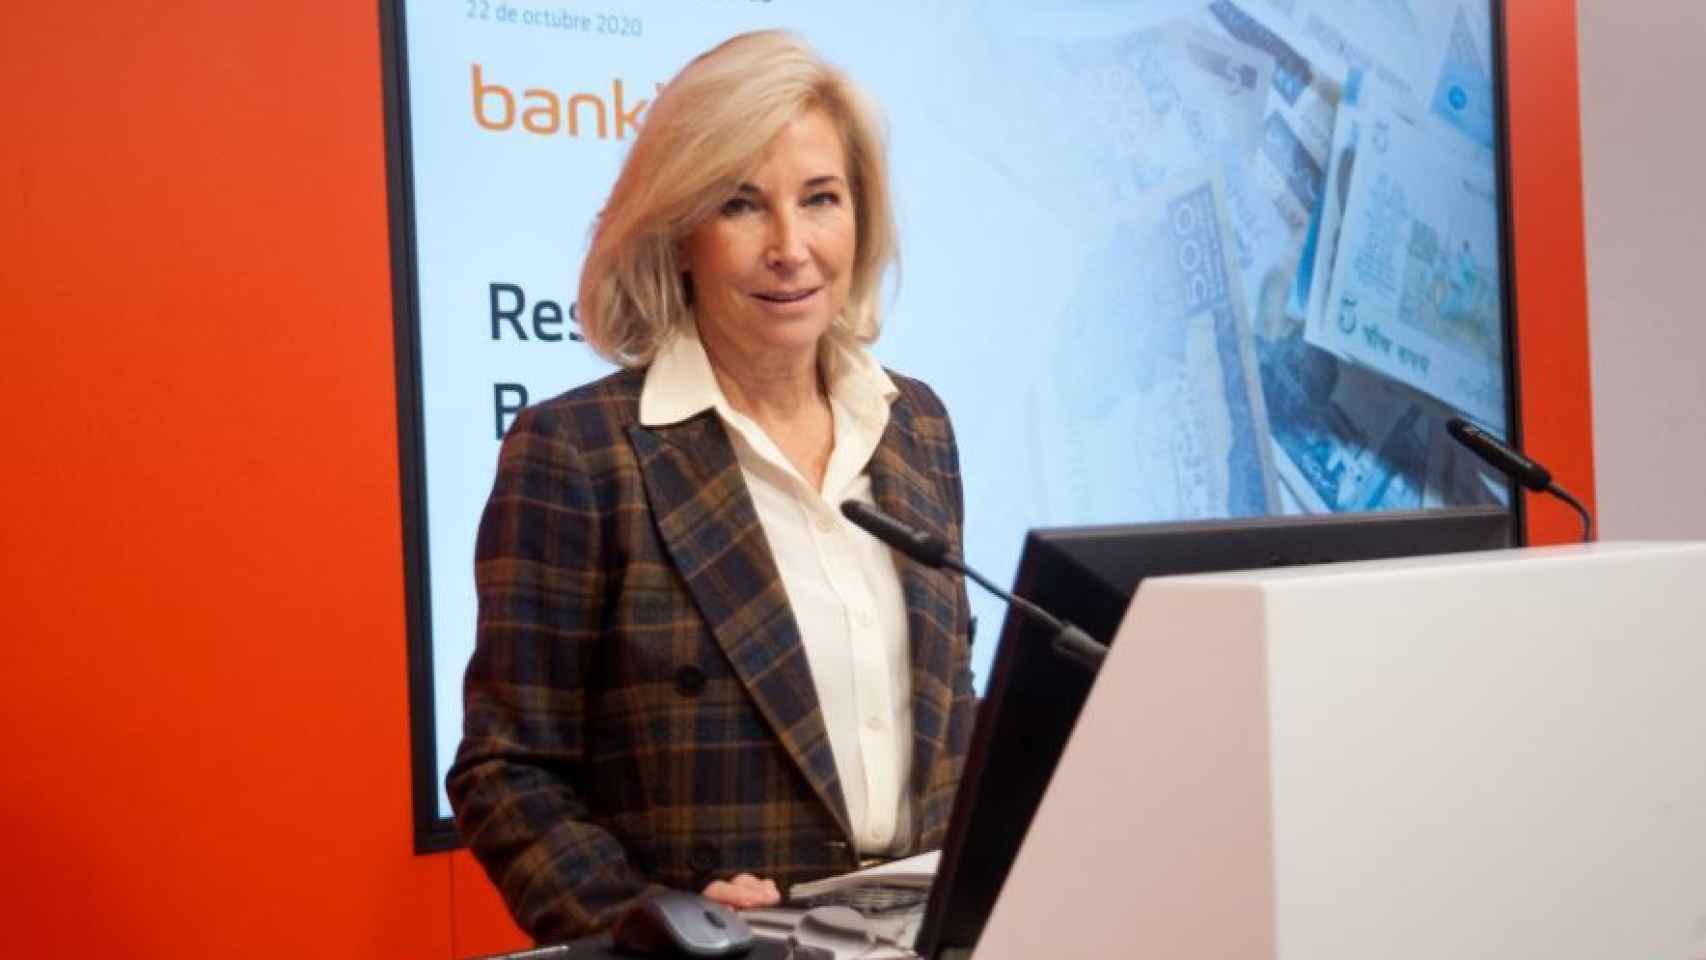 María Dolores Dancausa, CEO de Bankinter, rechaza la posibilidad de cobrar por los depósitos minoristas.